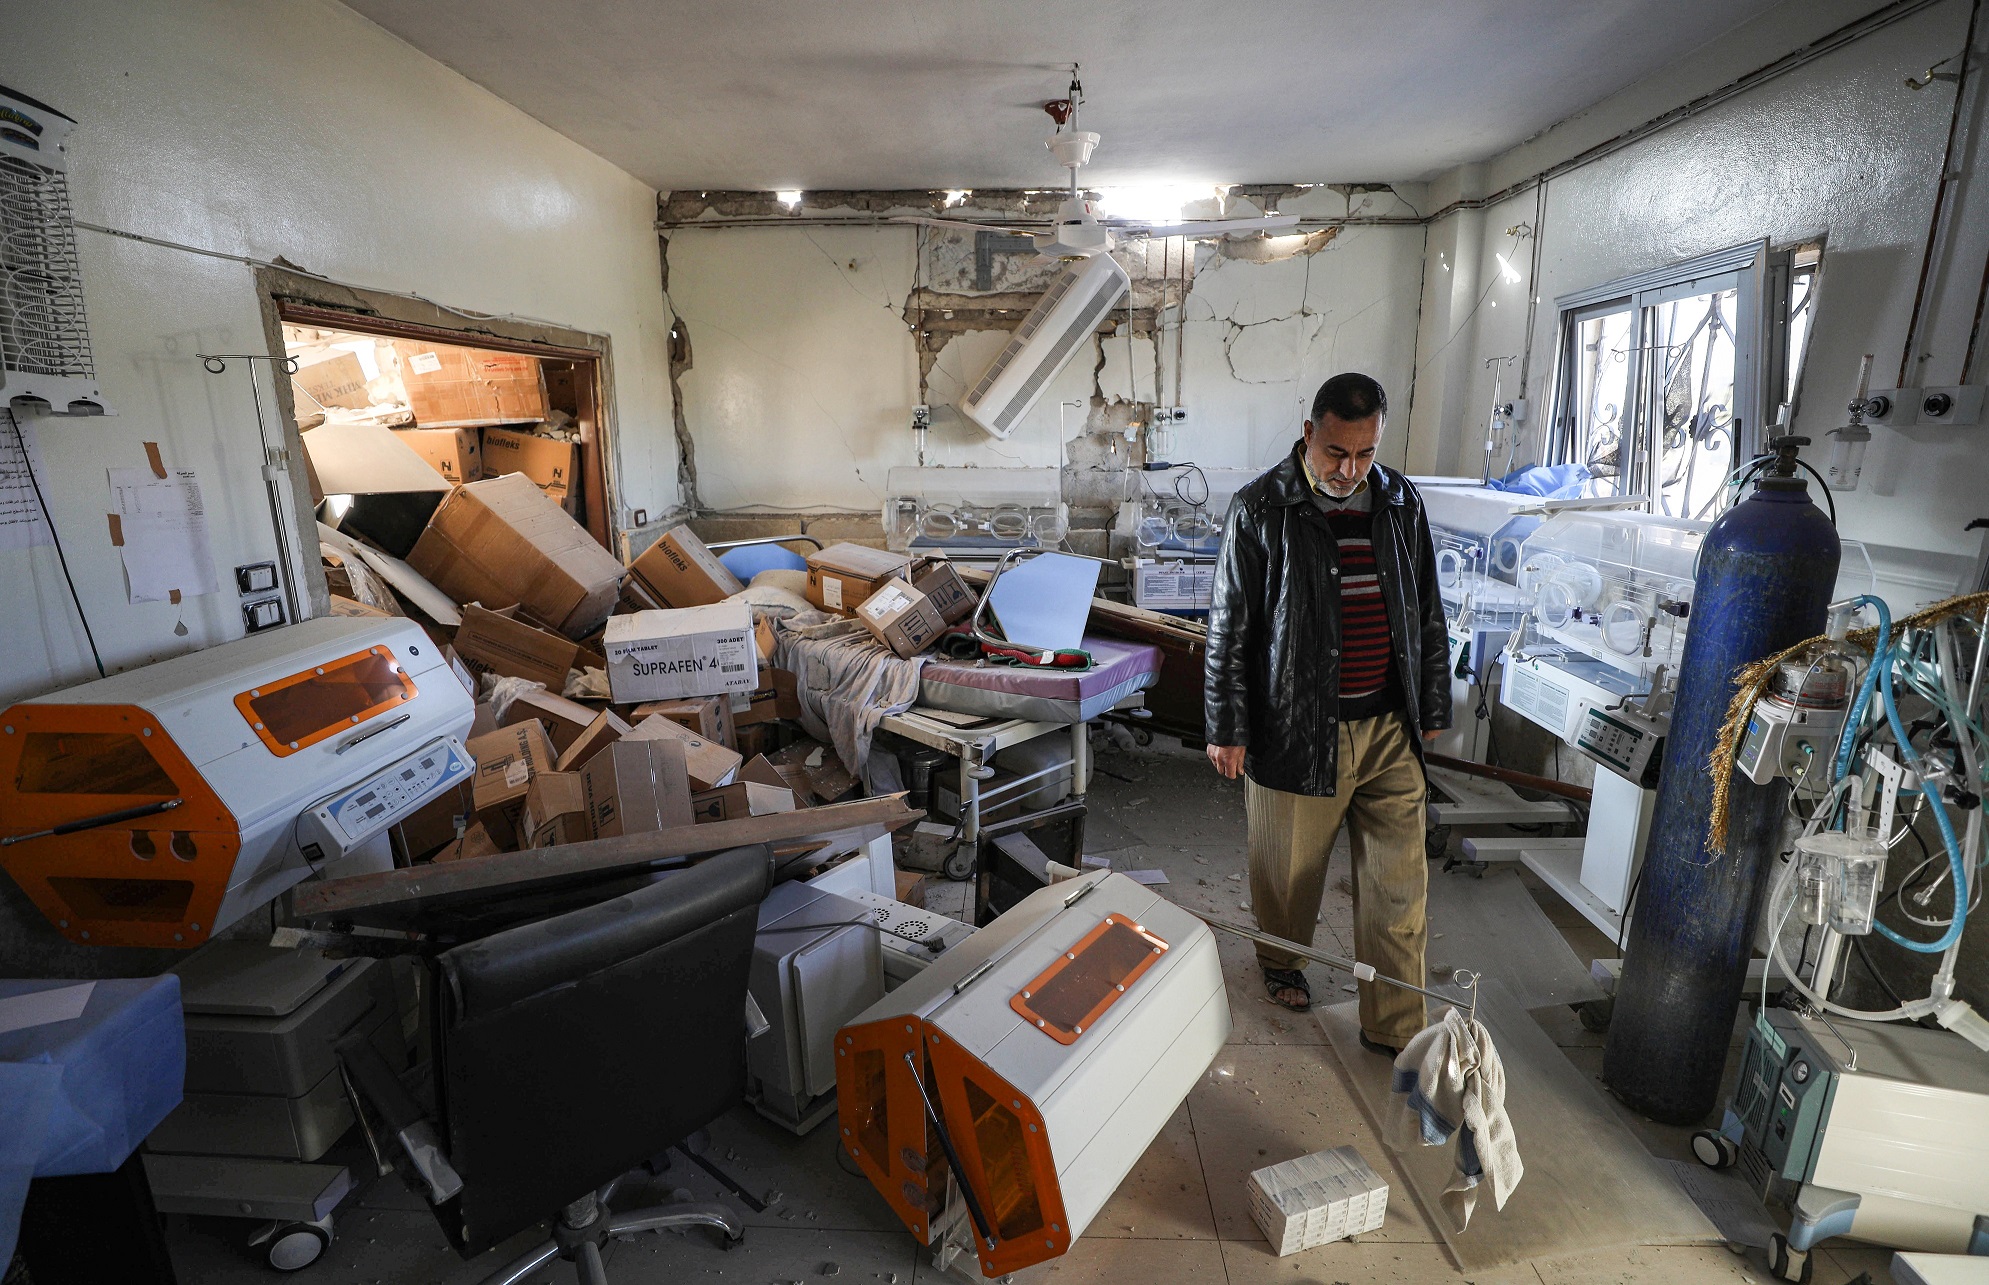 Idlib hospital